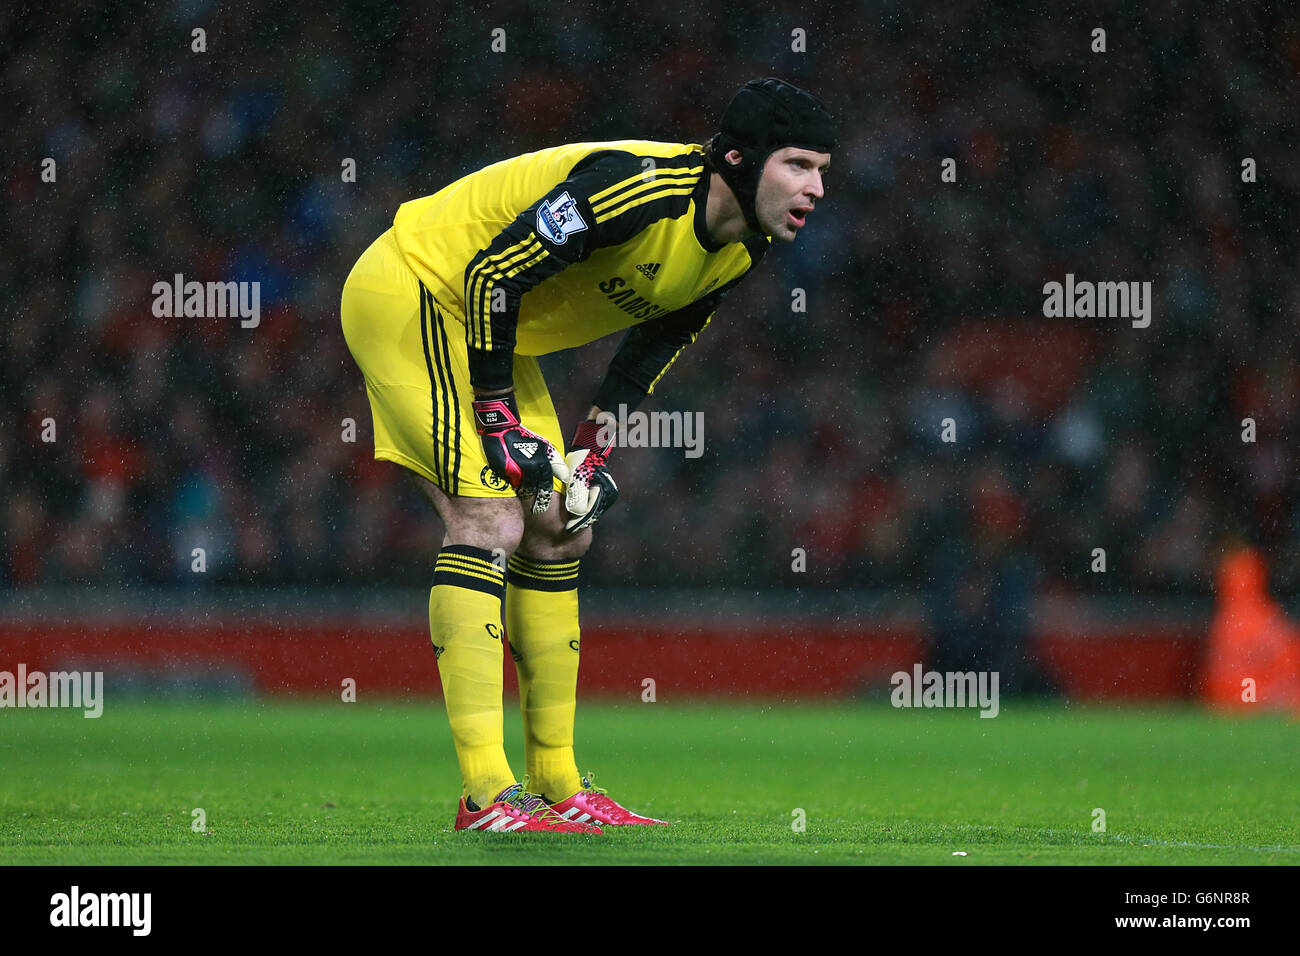 Calcio - Barclays Premier League - Arsenal v Chelsea - Emirates Stadium. Petr Cech, portiere del Chelsea Foto Stock